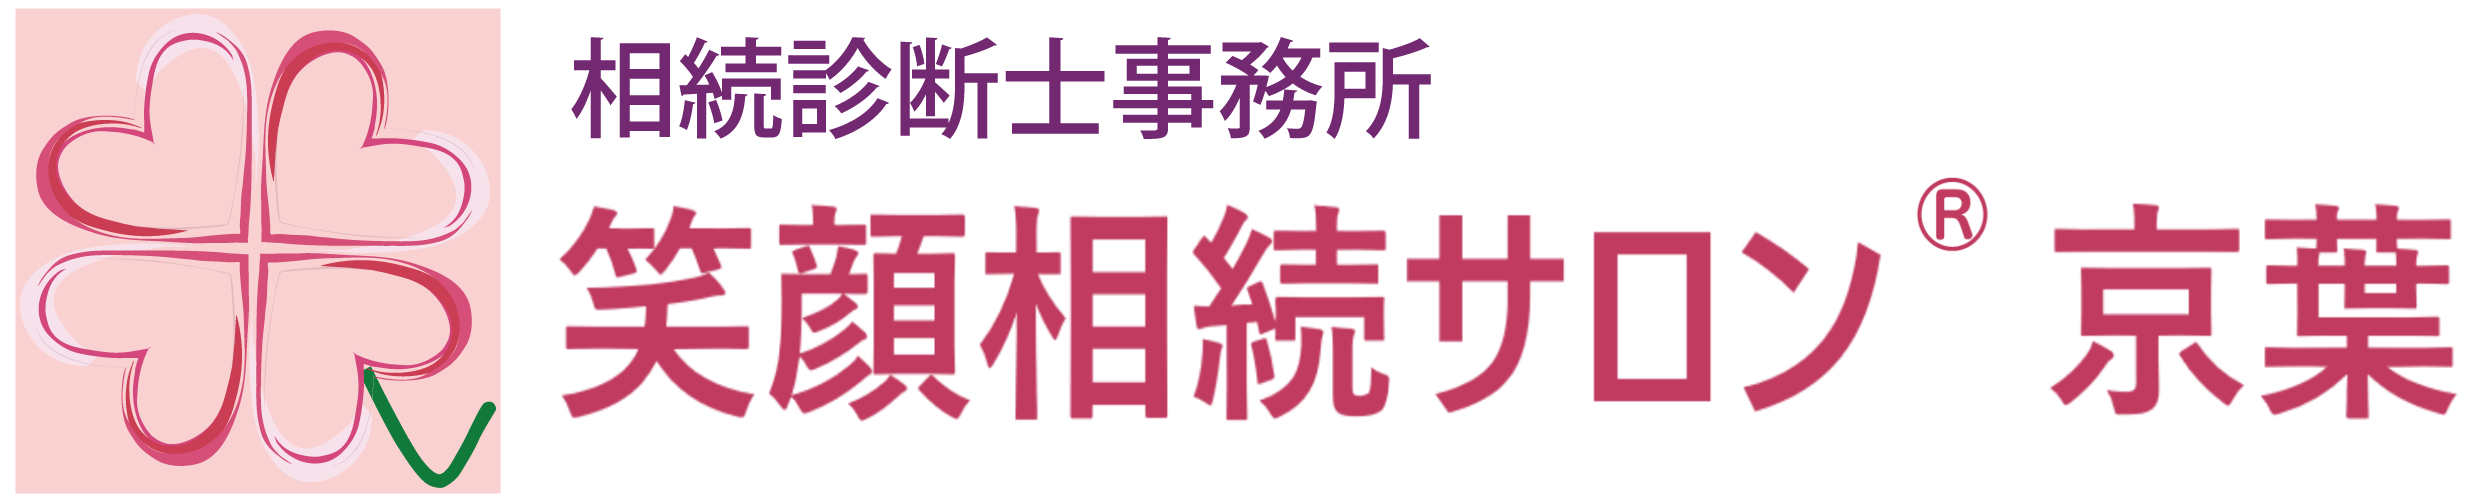 東京銀座の社労士事務所・相続相談・終活 | 竹内FP社労士事務所の画像